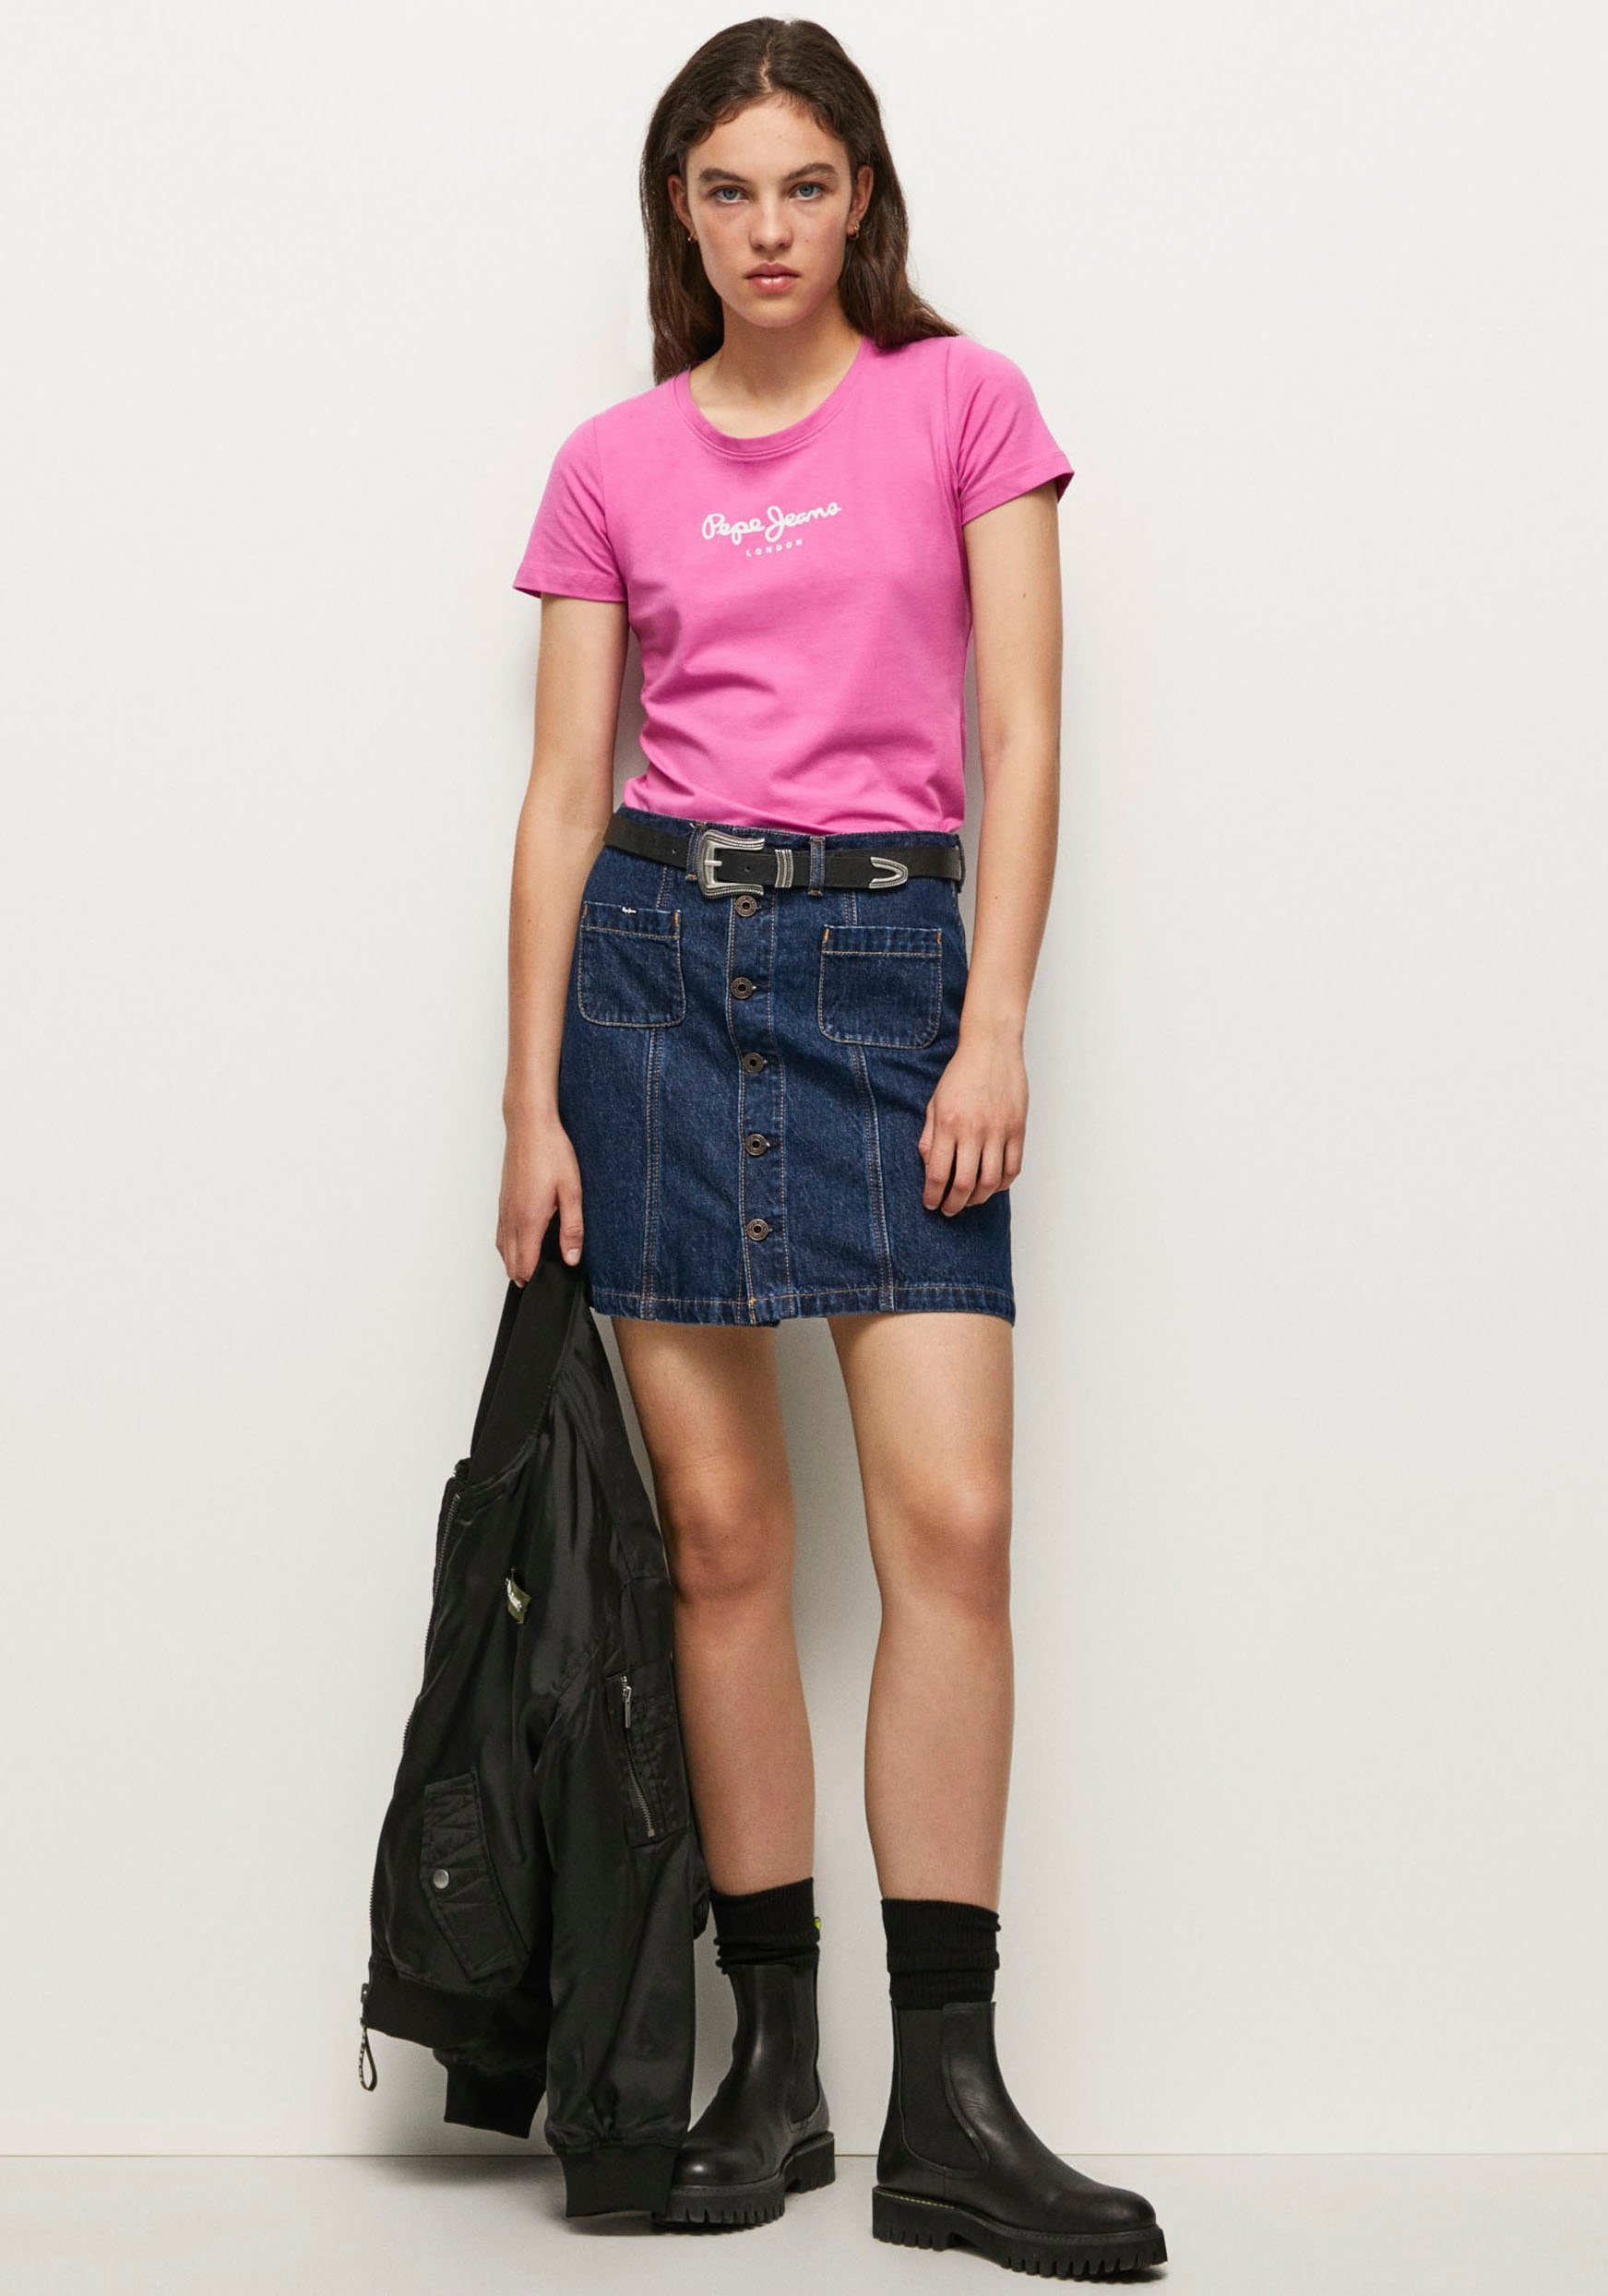 363ENGLISH und schlichter Jeans ROSE Pepe in Optik VIOLETTE figurbetonter Passform T-Shirt in unifarbener